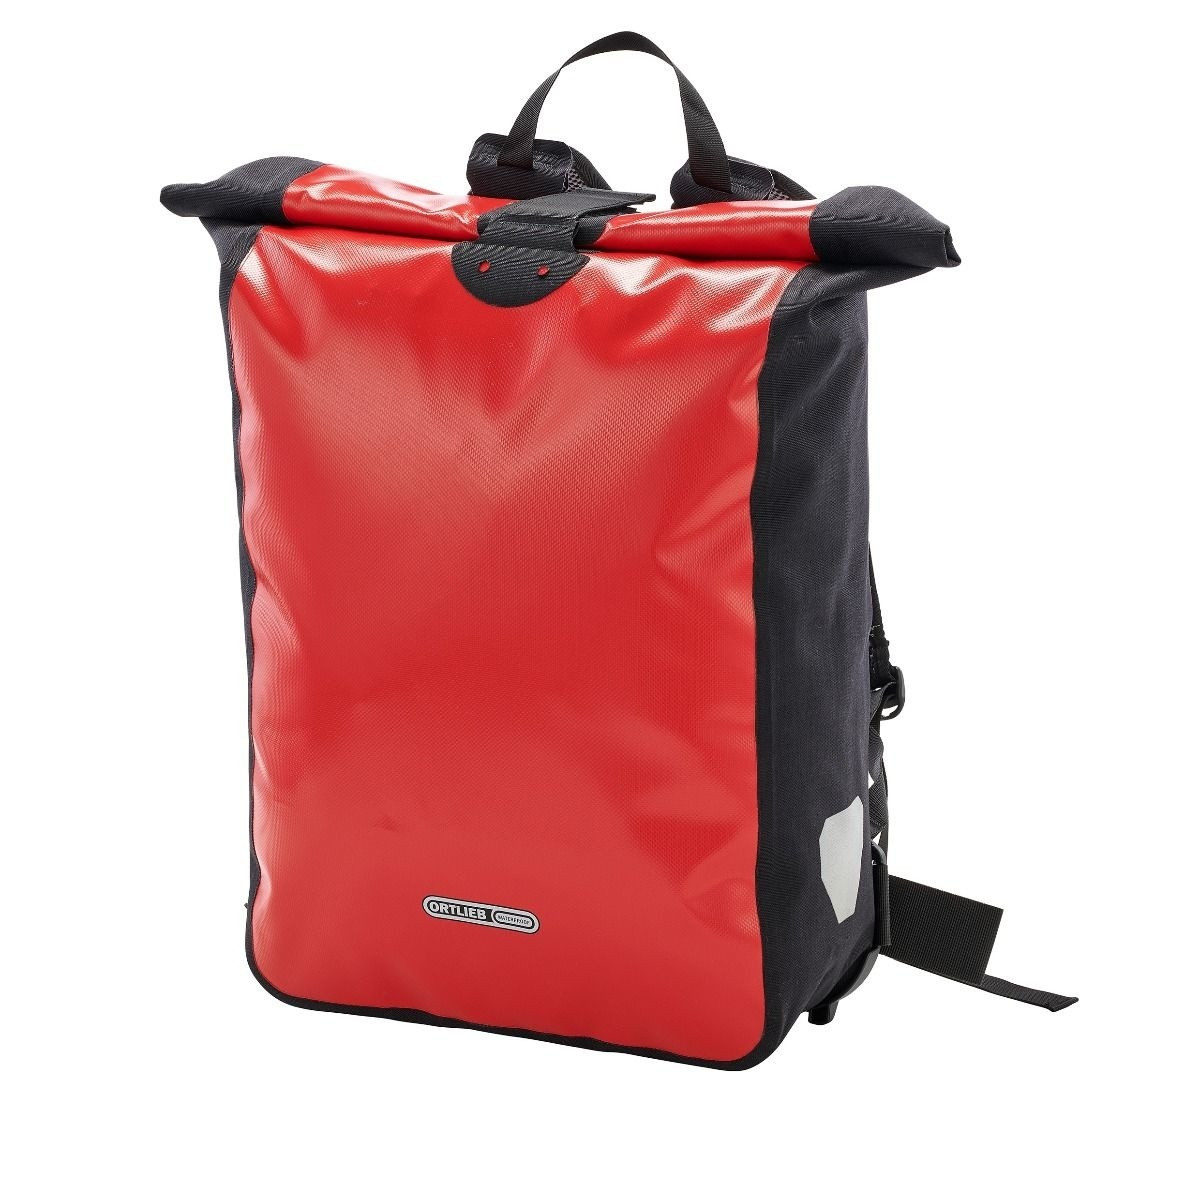 Koerierstas Messenger-Bag Red-Black 39L